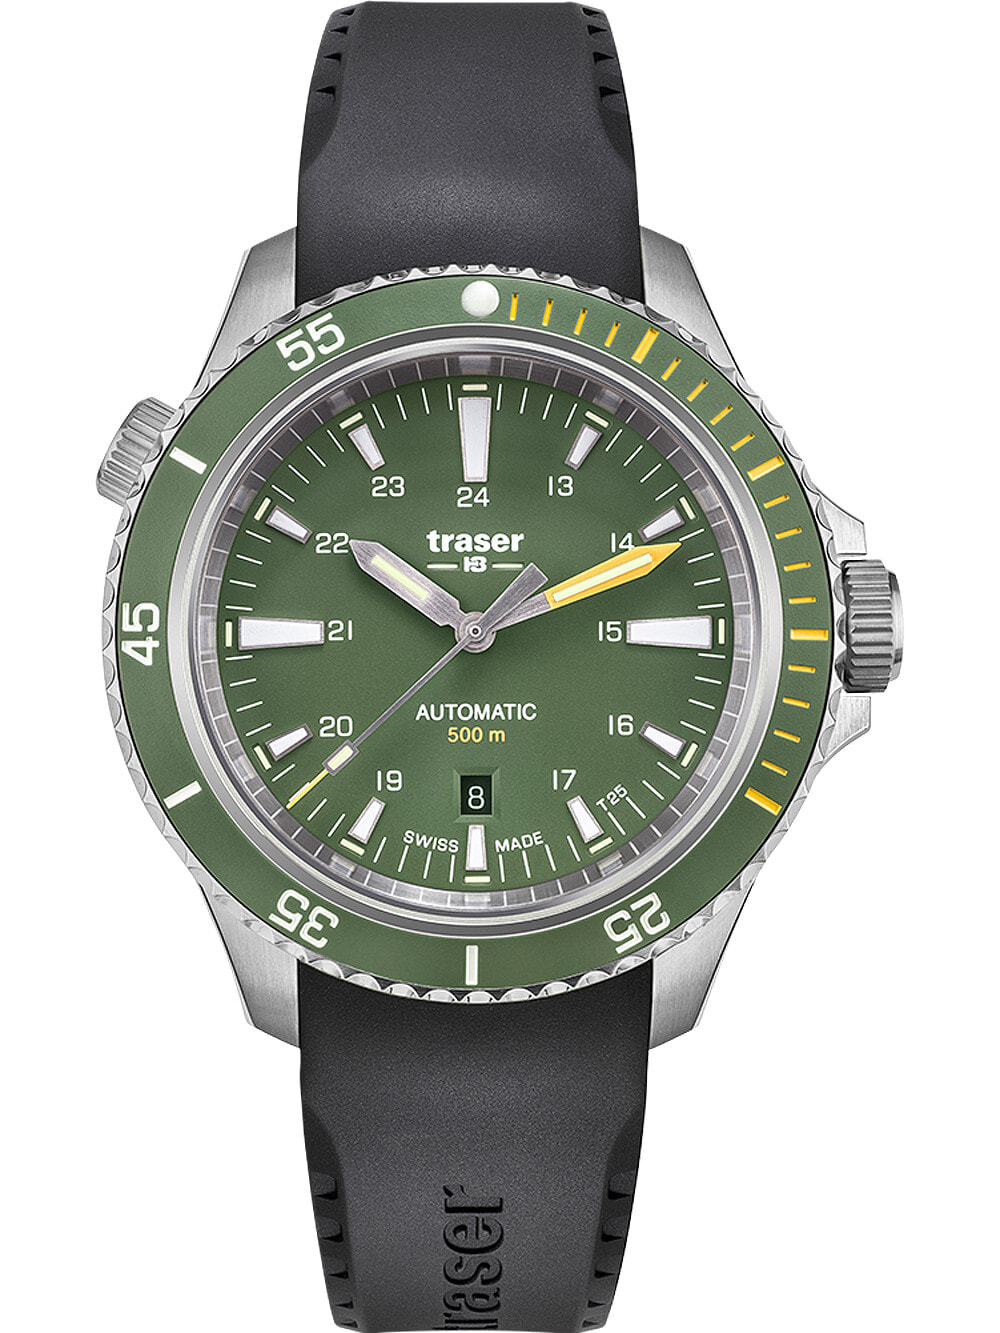 Мужские наручные часы с черным силиконовым ремешком Traser H3 110326 P67 Diver Automatik Green 46mm 50ATM